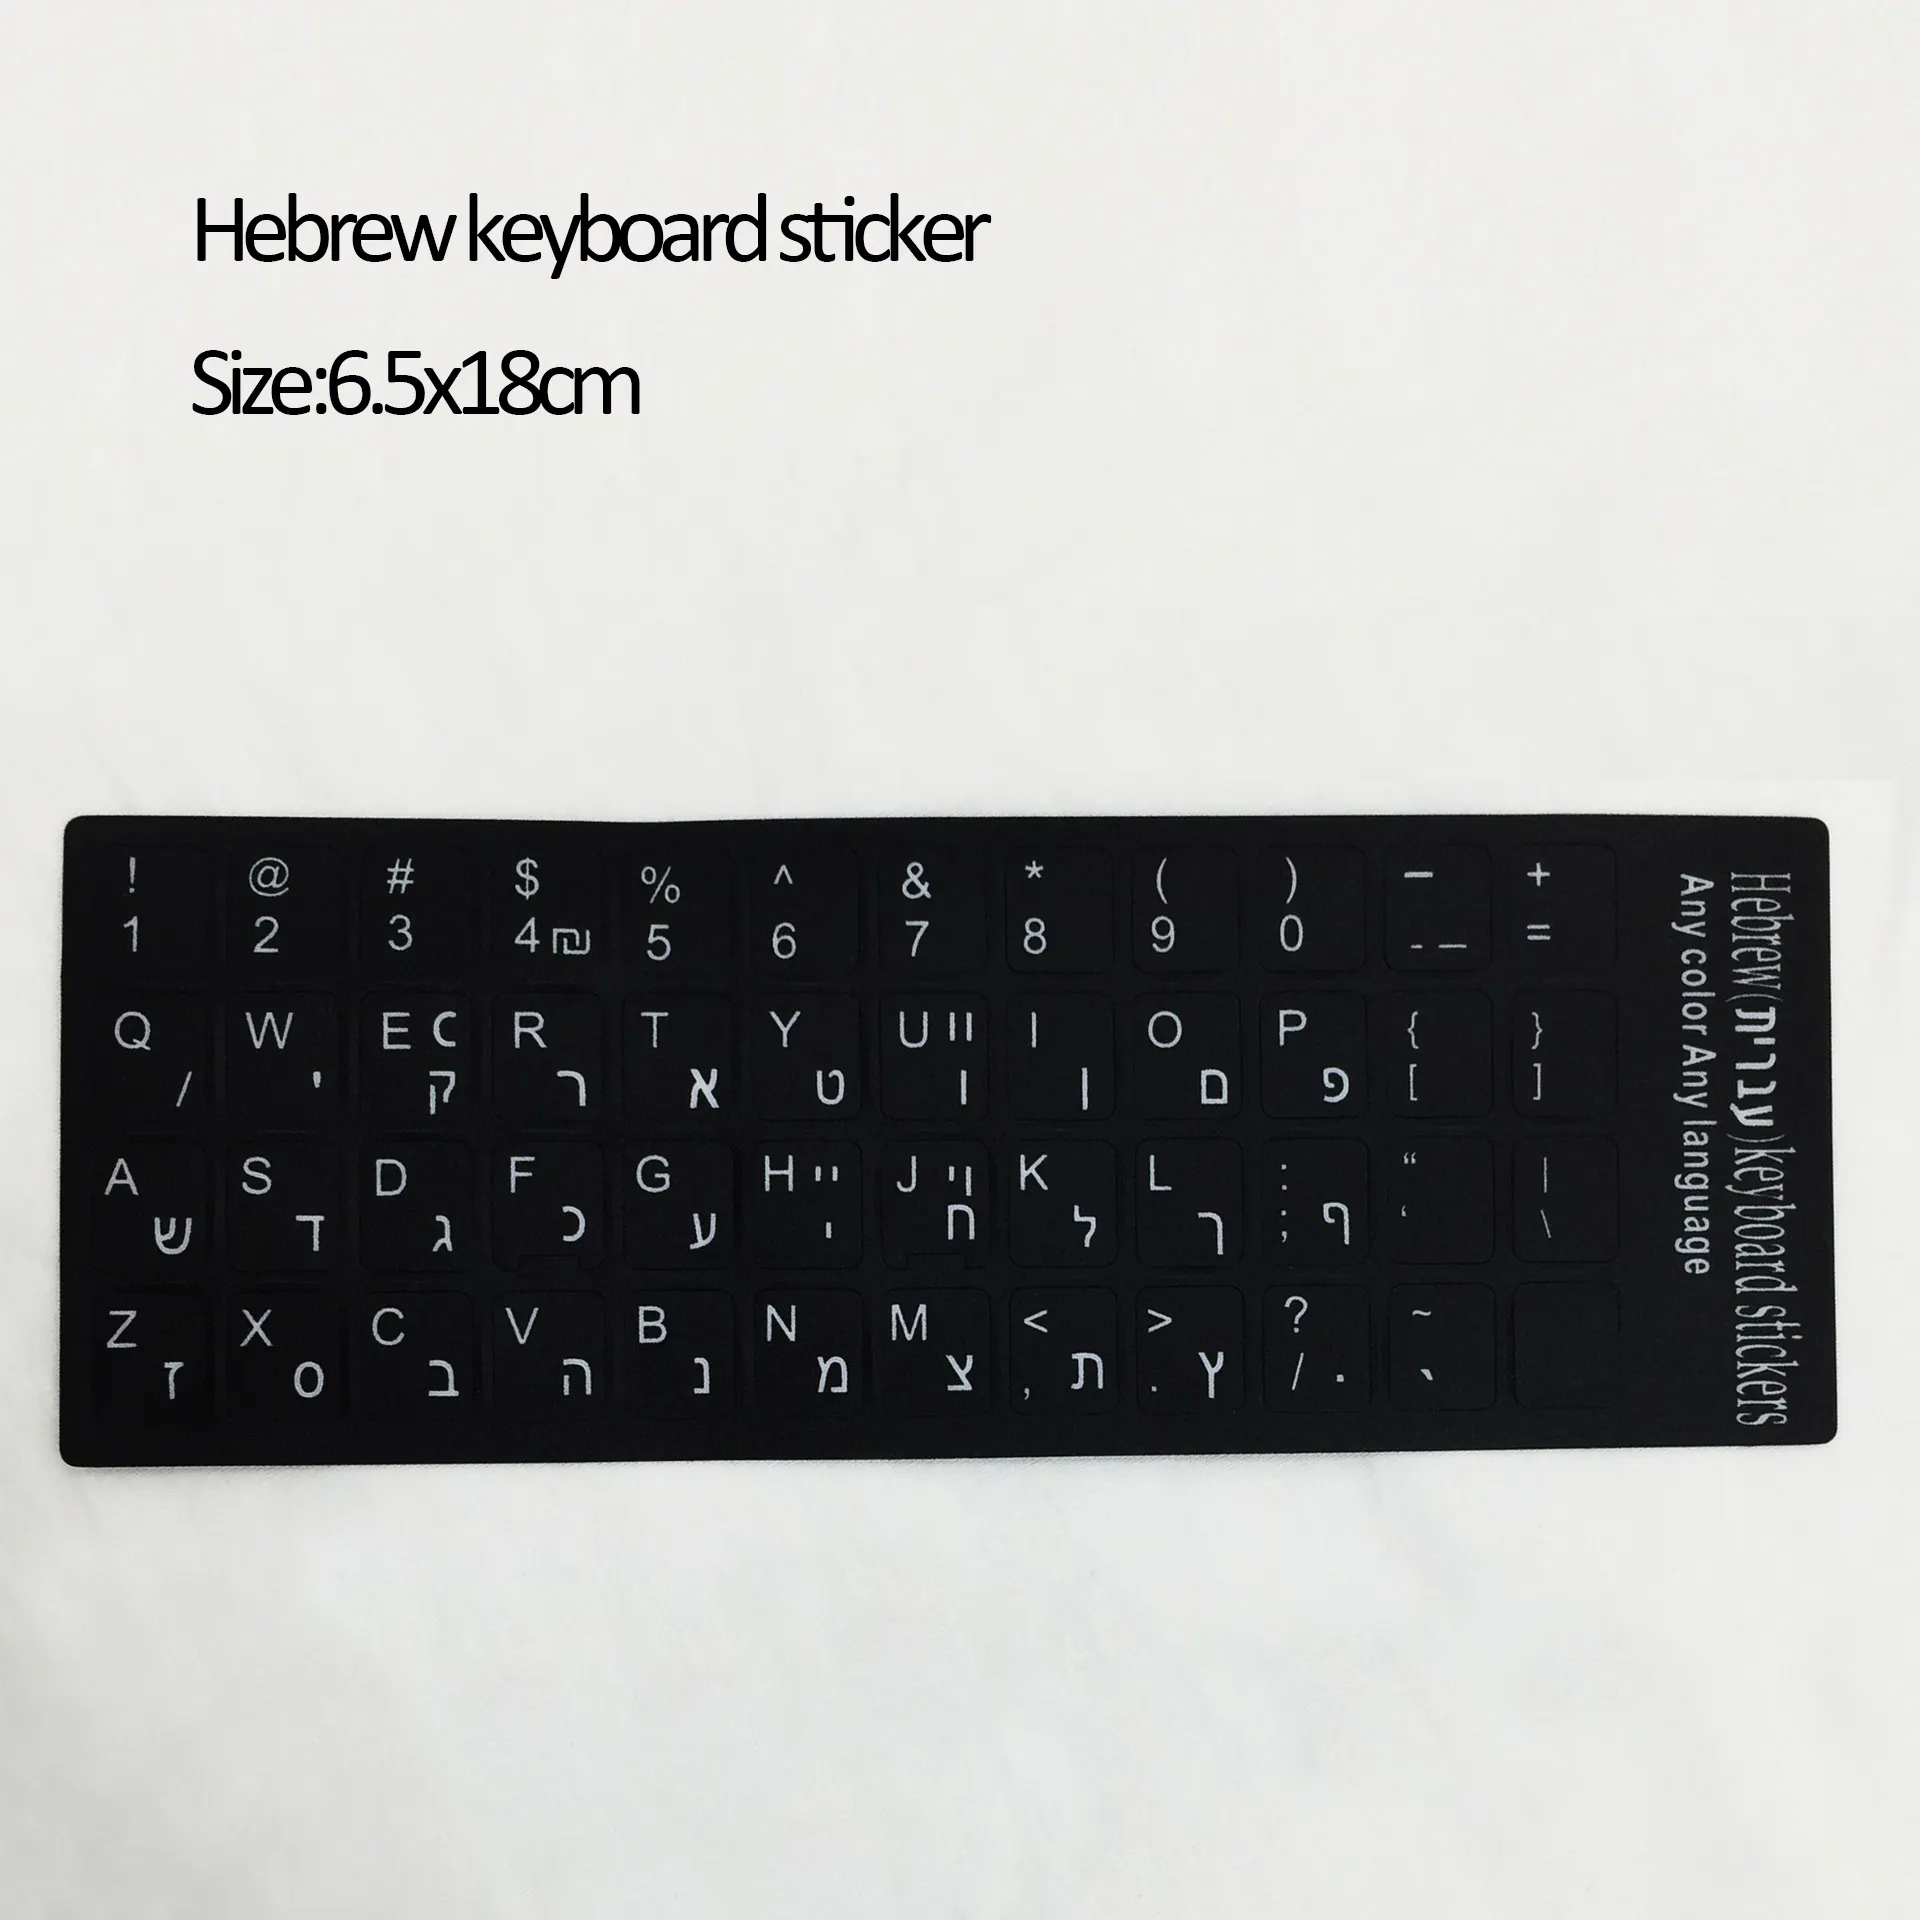 سعر المصنع بالجملة الروسية/الكورية/اليابانية/ألمانيا/الإسبانية ملصق لوحة المفاتيح لأغطية الكمبيوتر المحمول